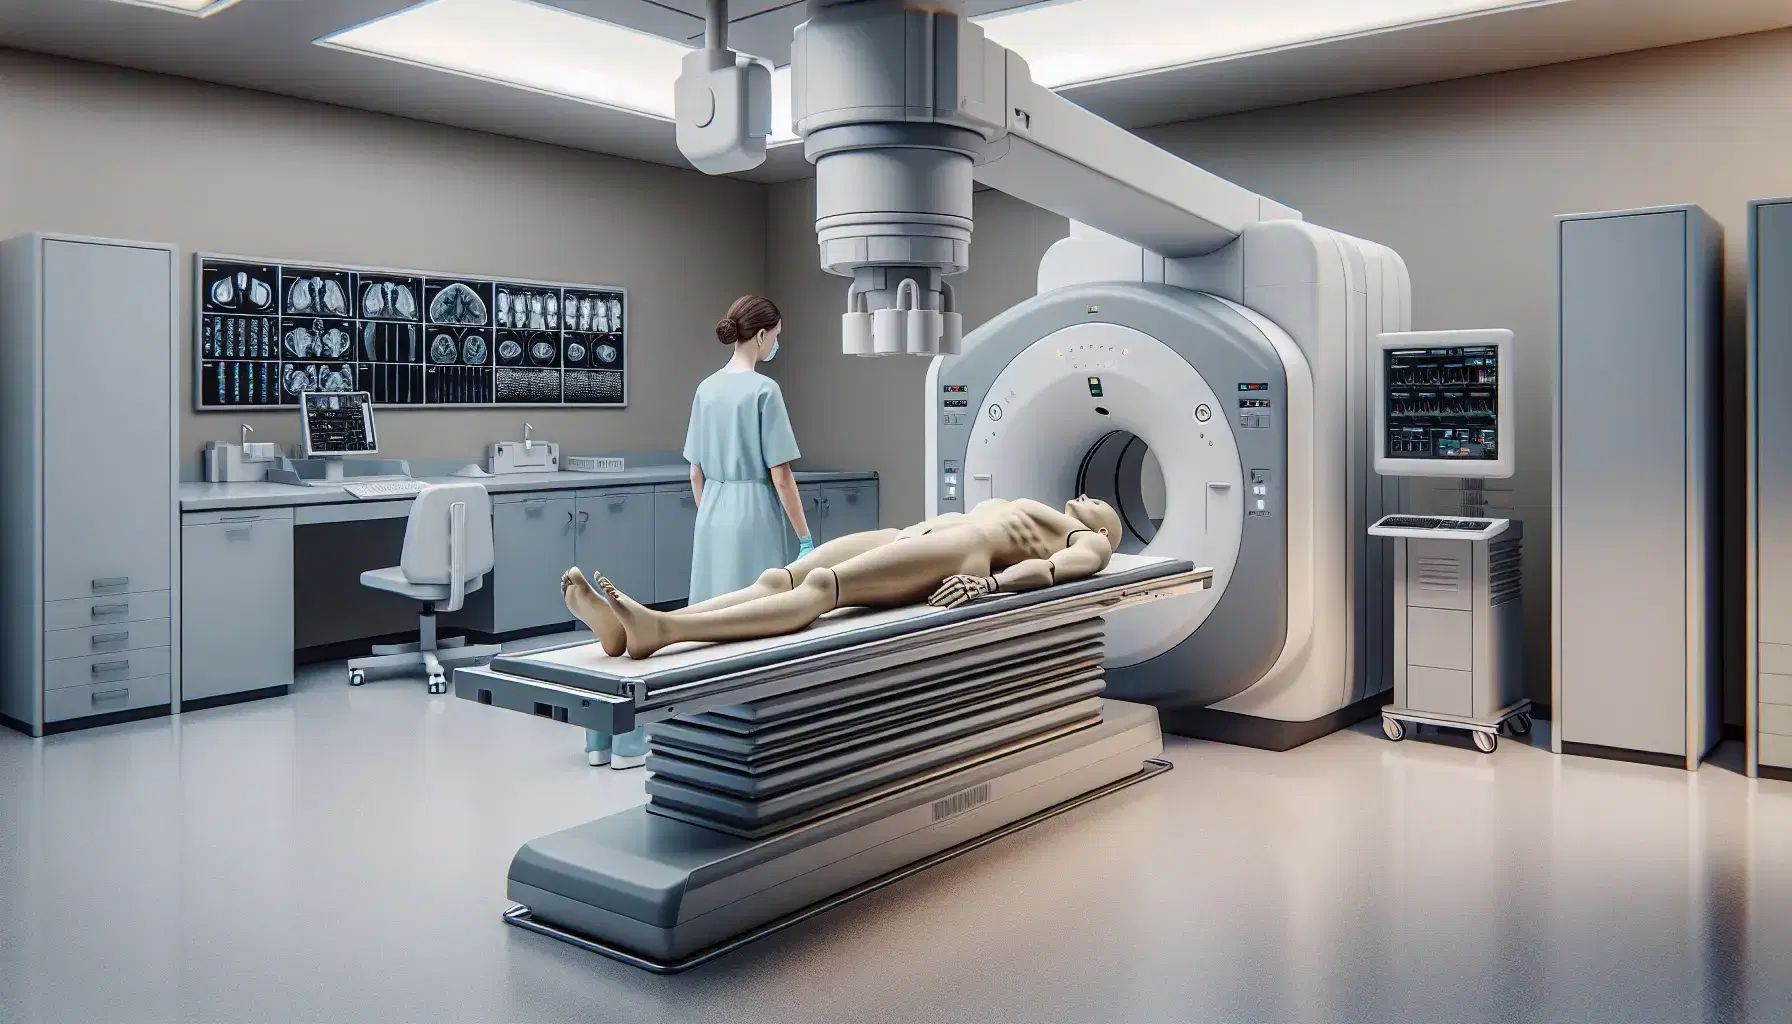 Sala de radiología con técnico ajustando máquina de rayos X junto a maniquí en mesa, panel de control en pared y ambiente clínico.